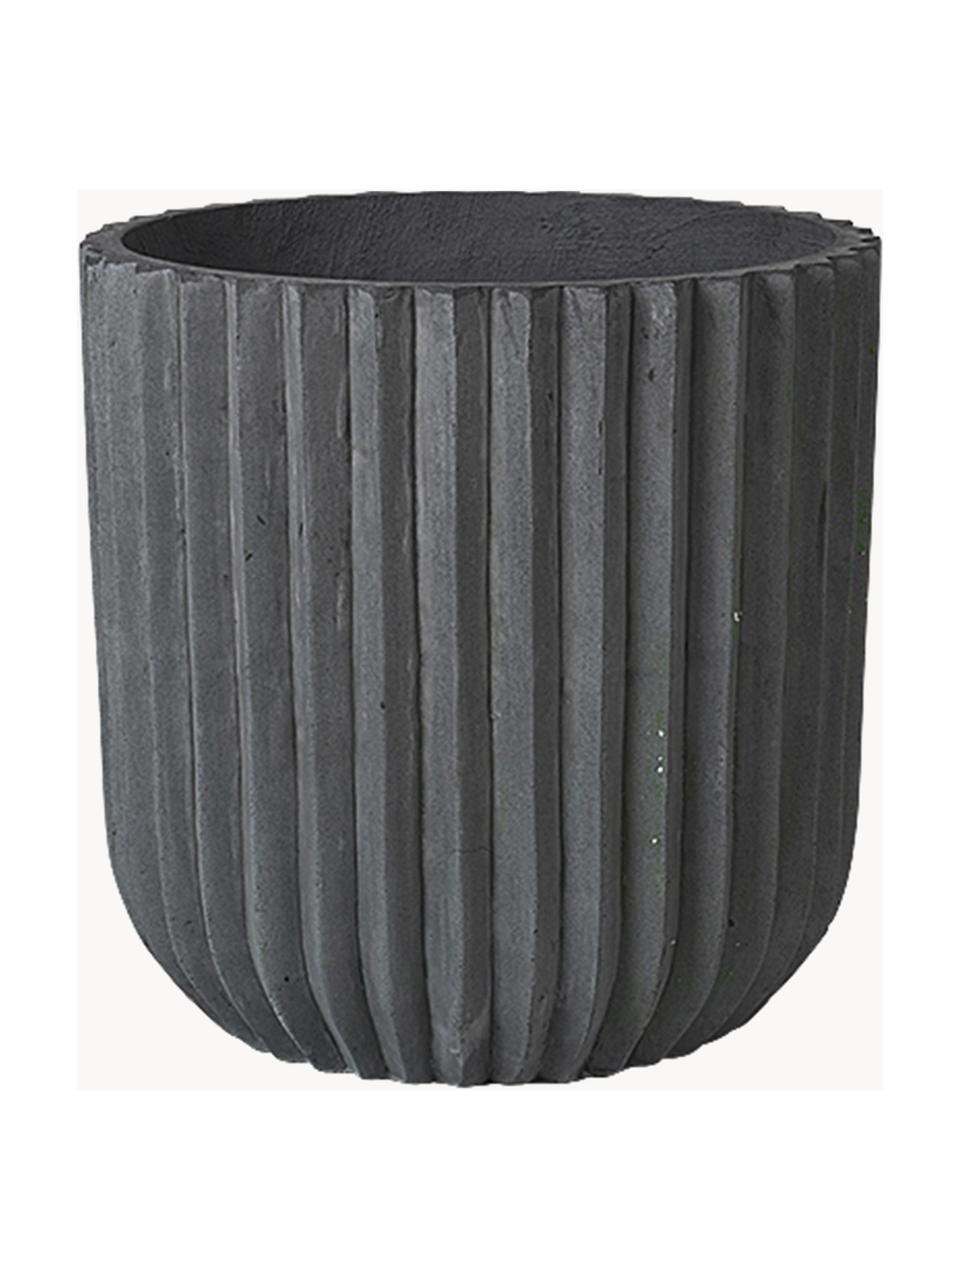 Osłonka na doniczkę Zylinder, Cement włóknisty, Antracytowy, Ø 50 x W 50 cm